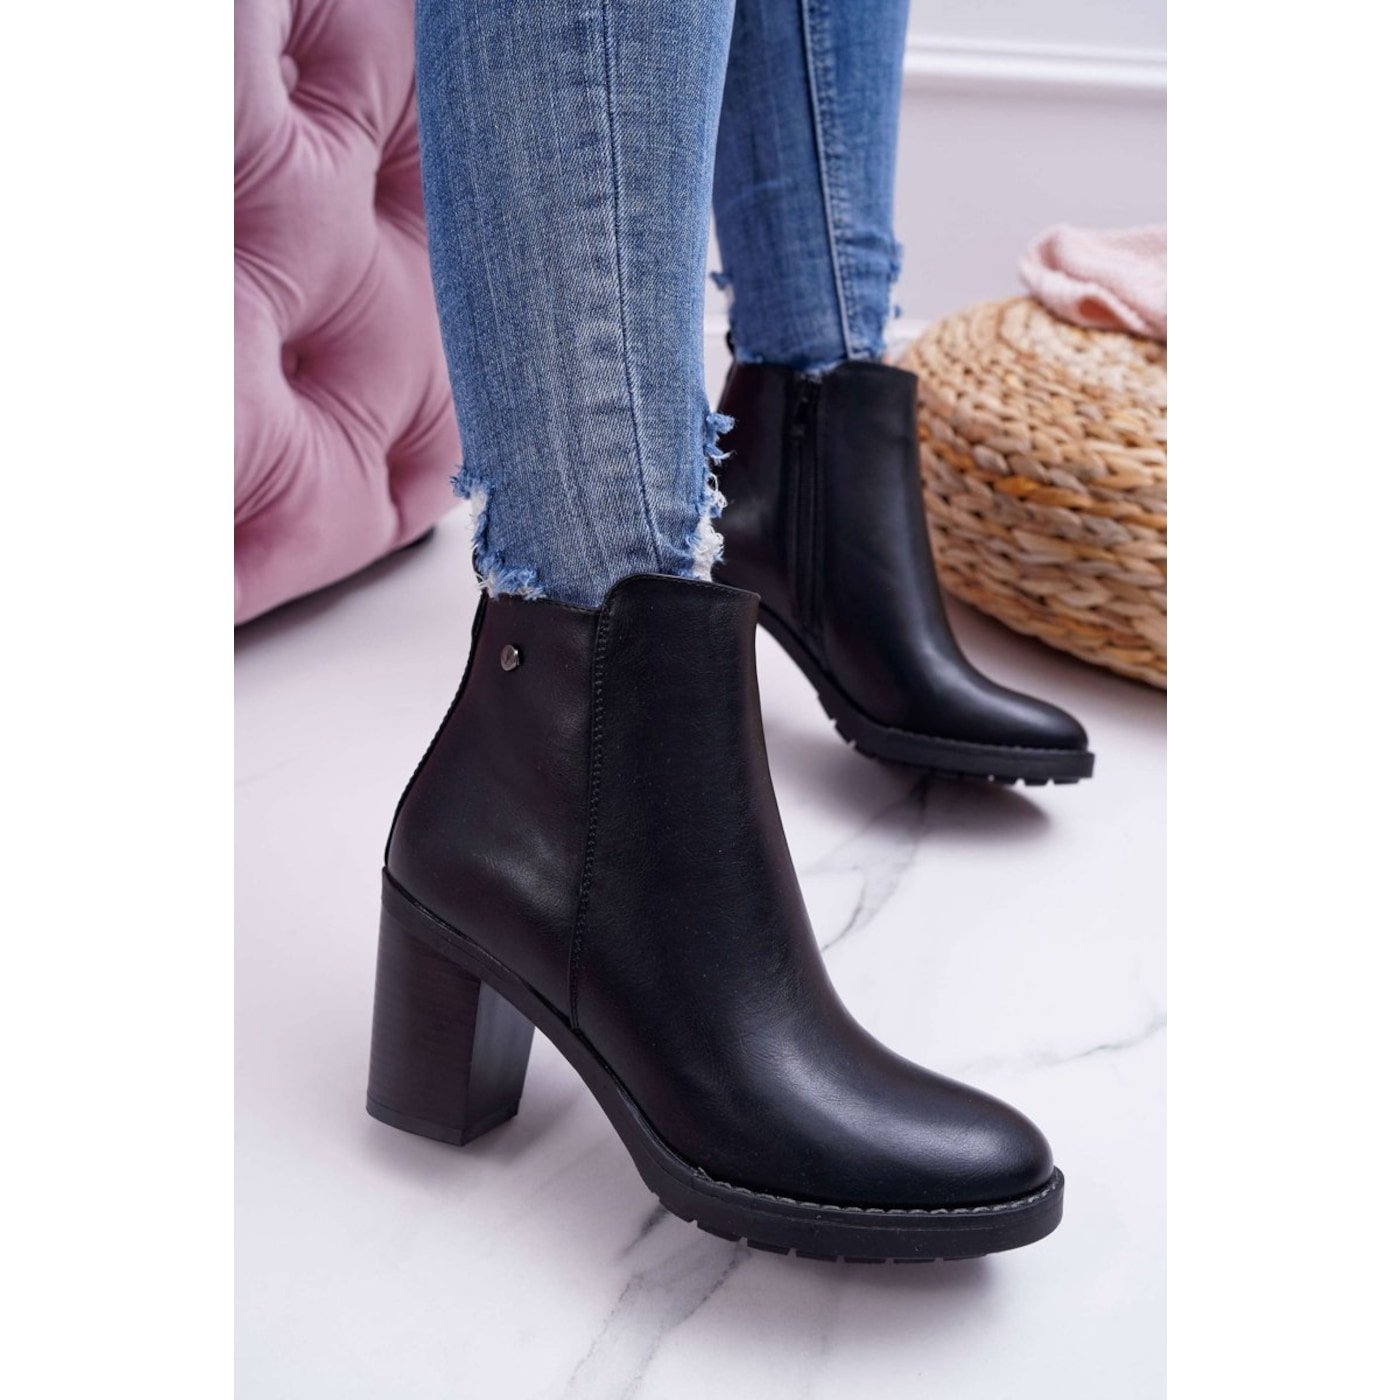 Women’s Boots On High Heel Black Serrena